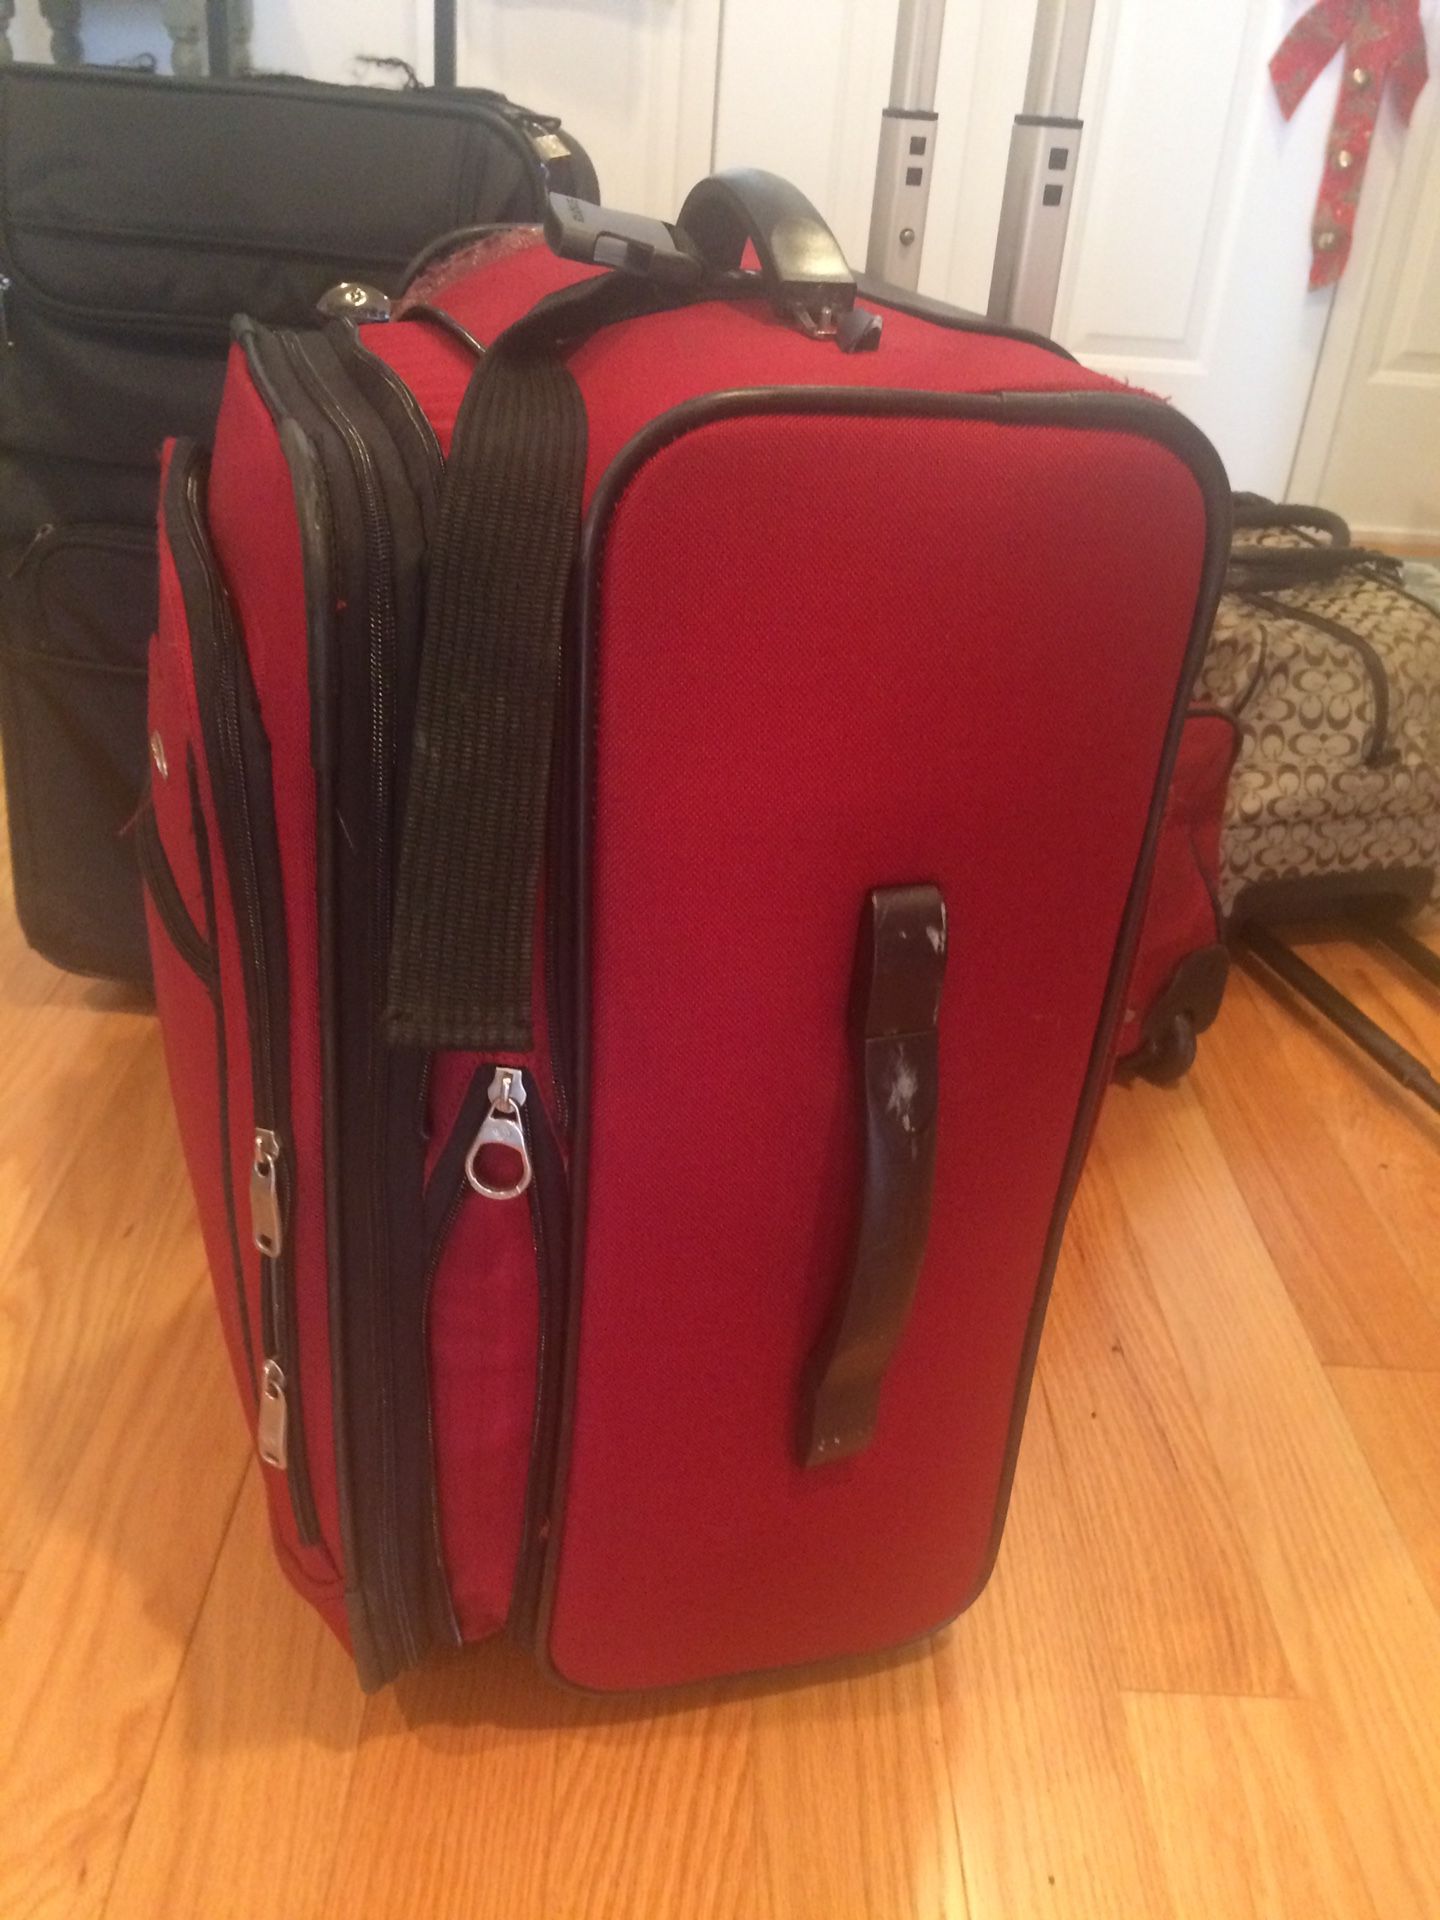 Large expandable luggage